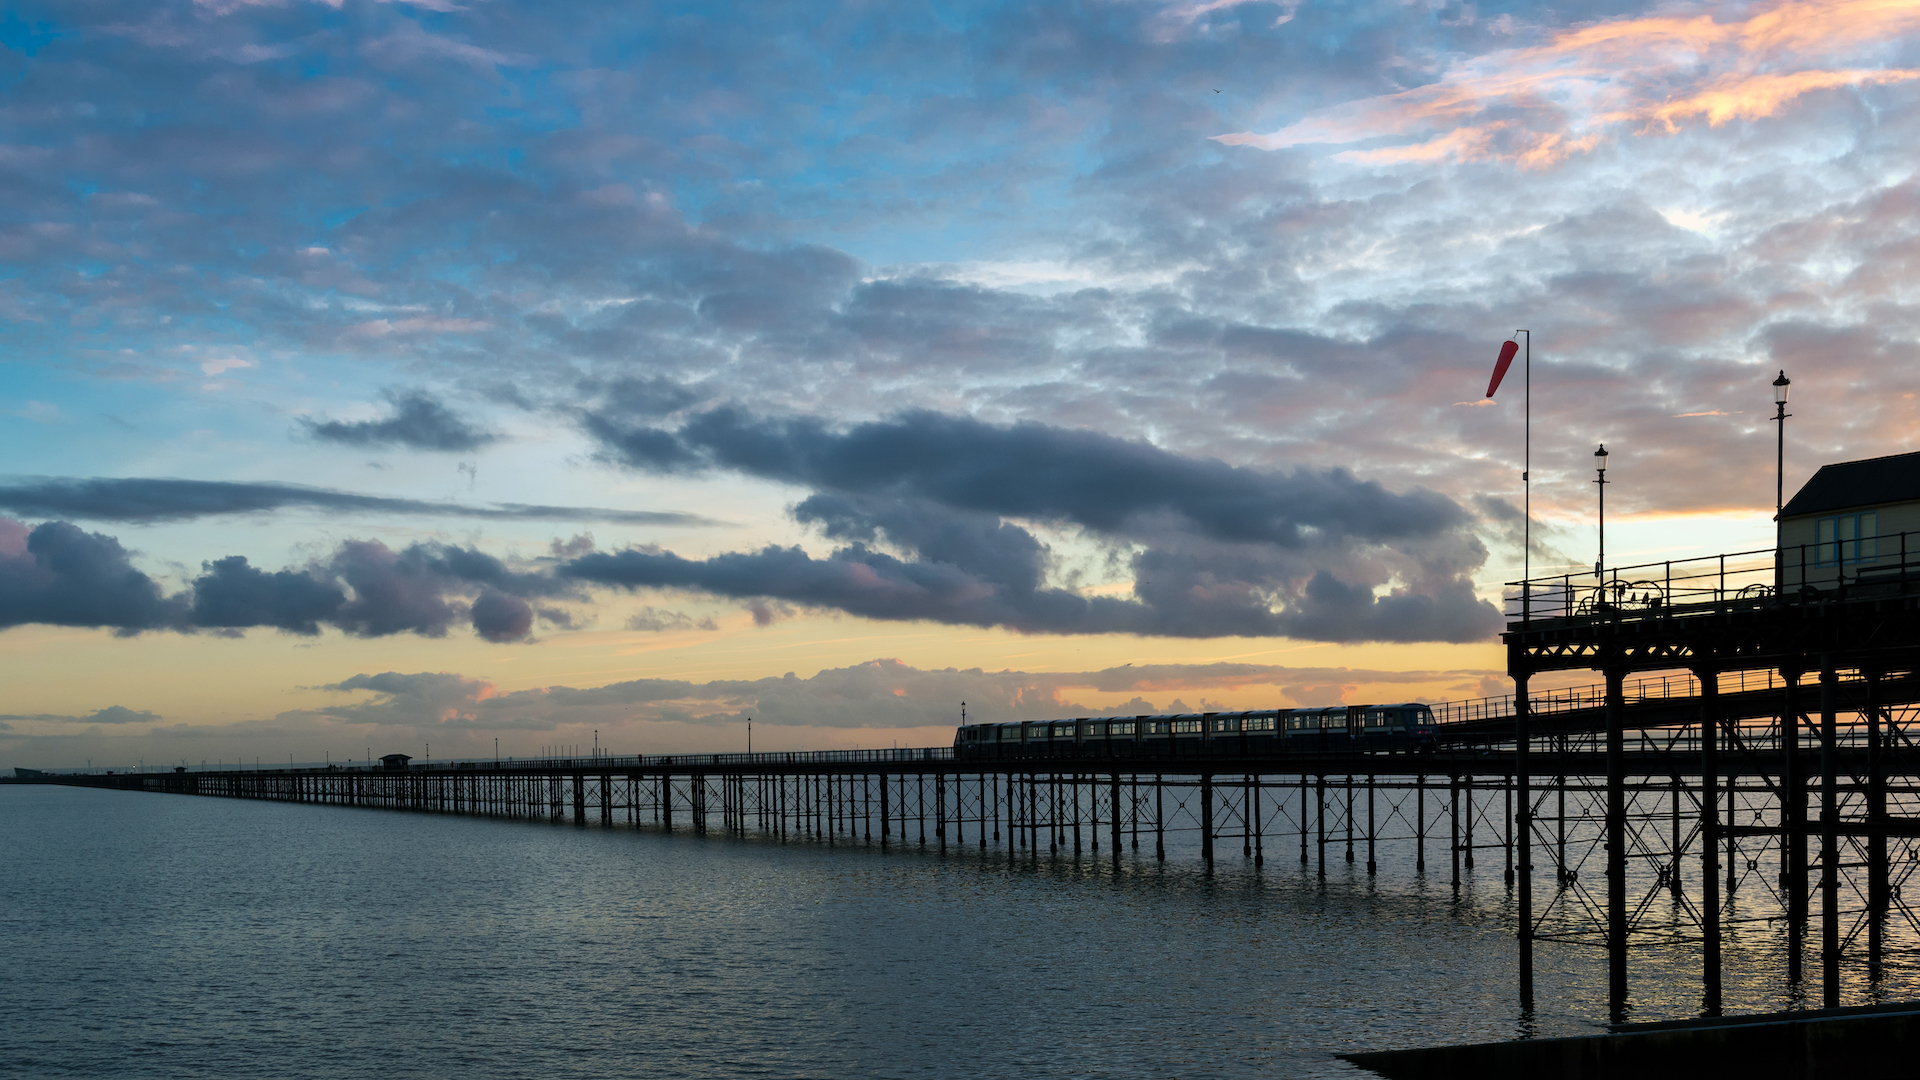 A pier in an English coastal town